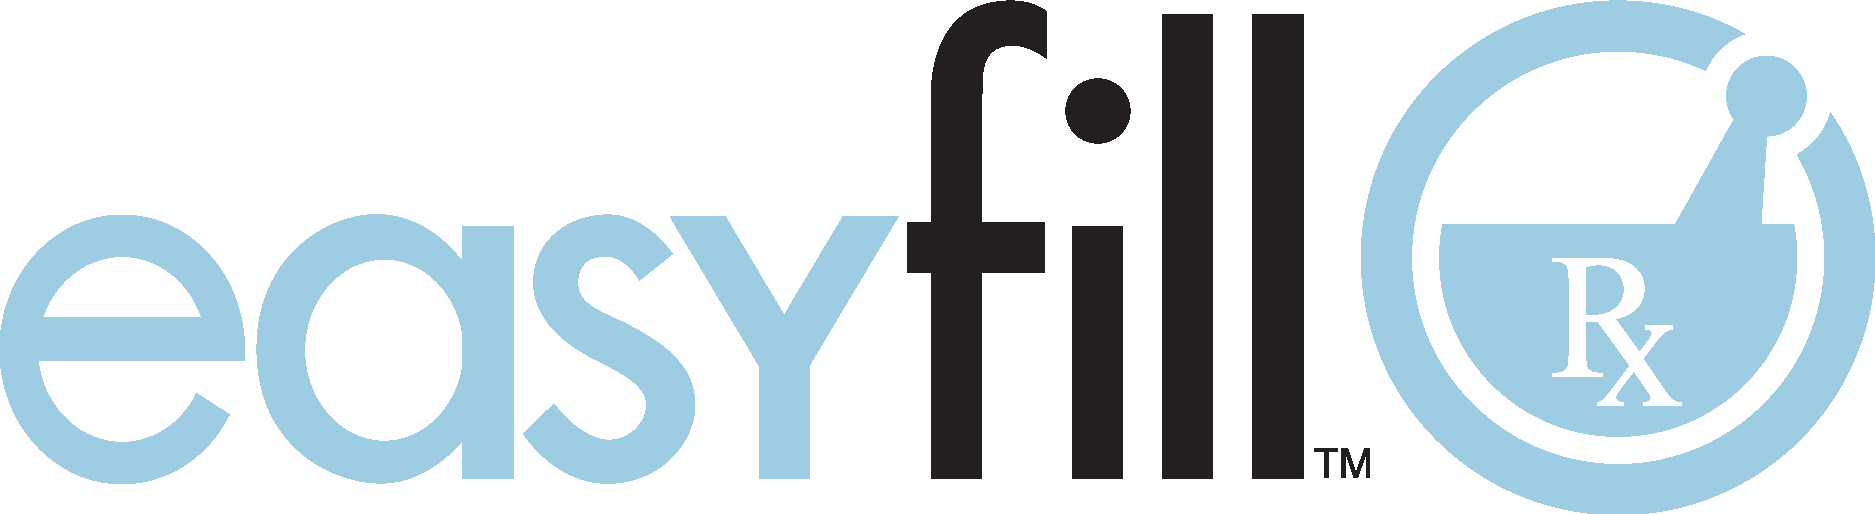 easyfill Logo Vector